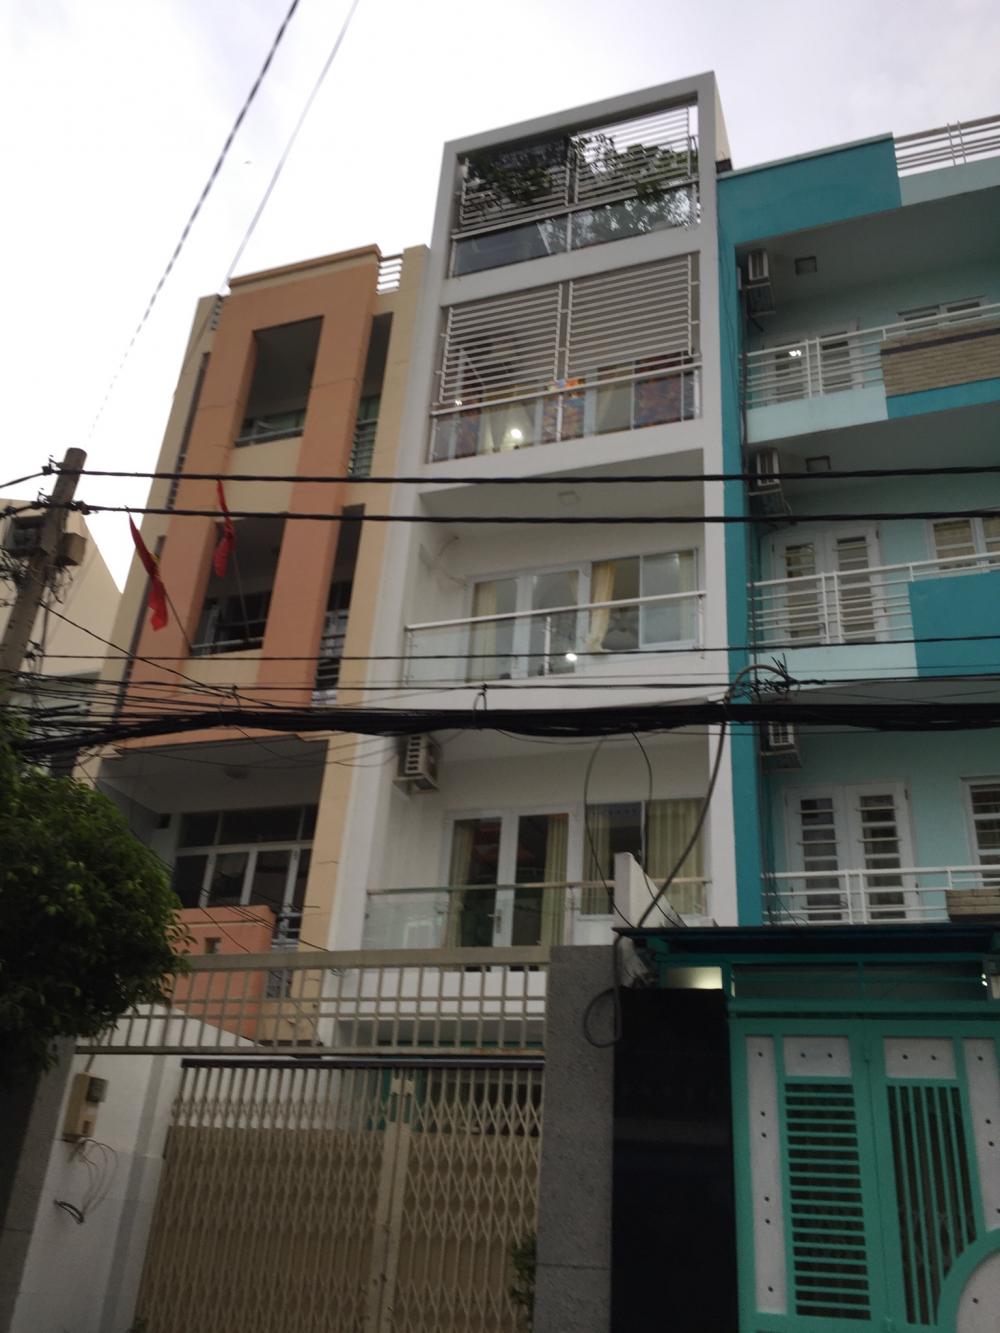 Bán nhà MT đường C3, quận Tân Bình, gần Hoàng Văn Thụ, cho thuê 25 triệu/th